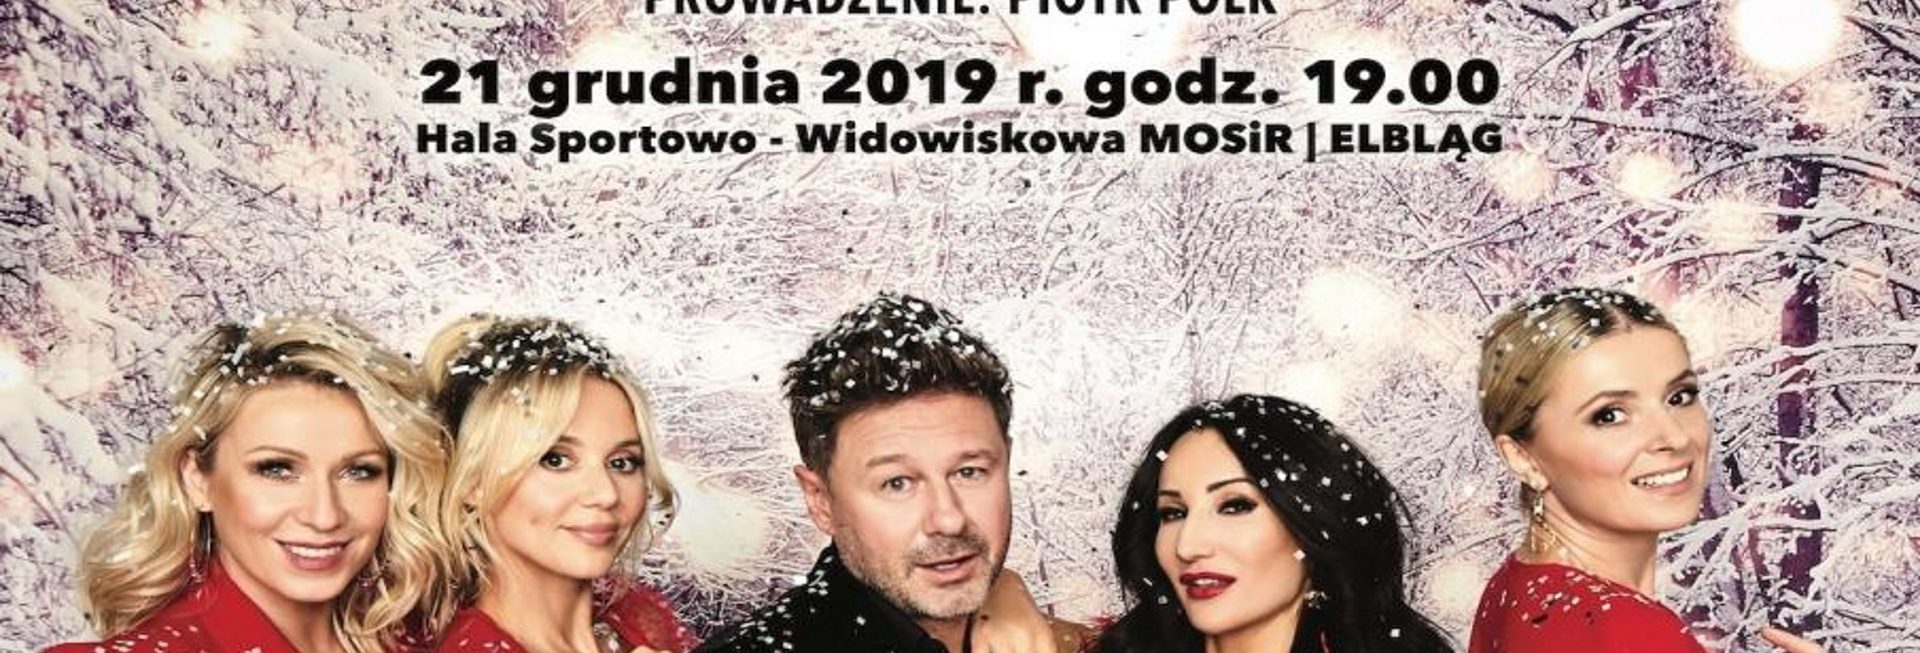 Zdjęcie w scenerii zimowej artyści występujący w koncercie od lewej strony Kasia Cerekwicka, Kasia Moś, Andrzej Piasek Piaseczny, Justyna Steczkowska i Halina Młynkowa.     